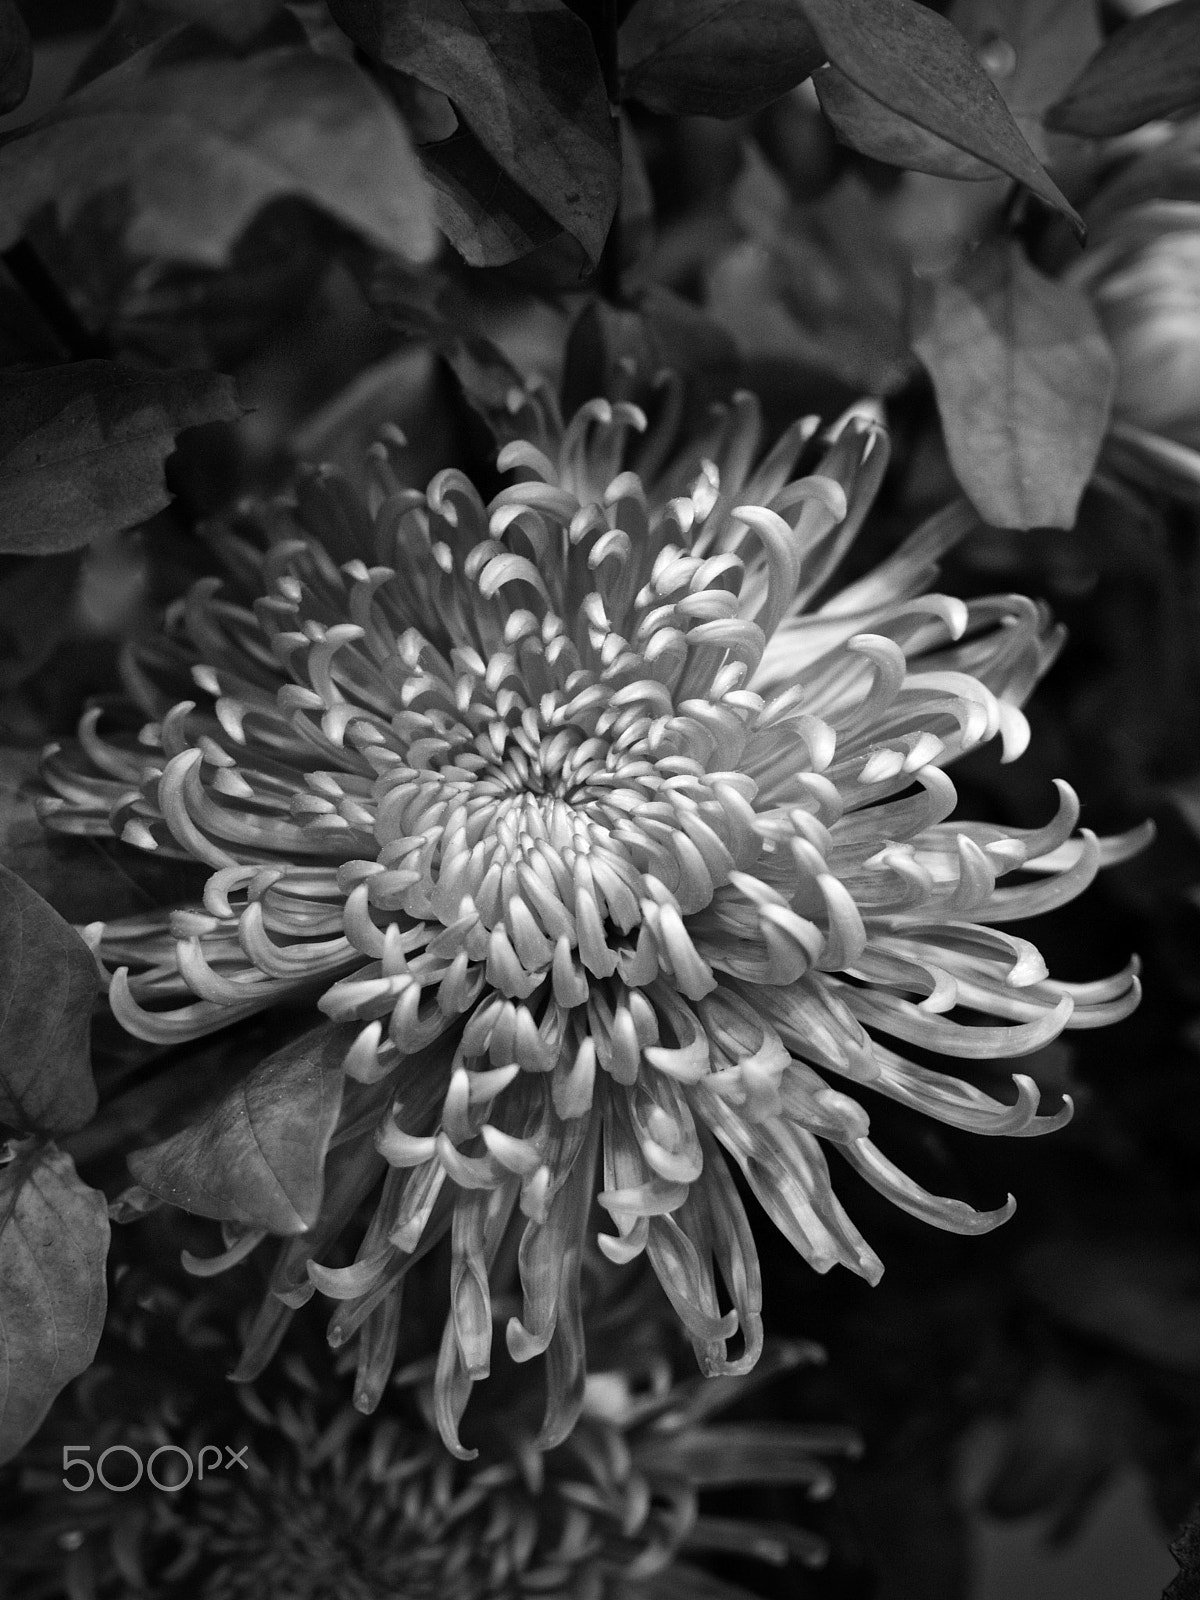 Nikon 1 J2 sample photo. Chrysanthemum photography